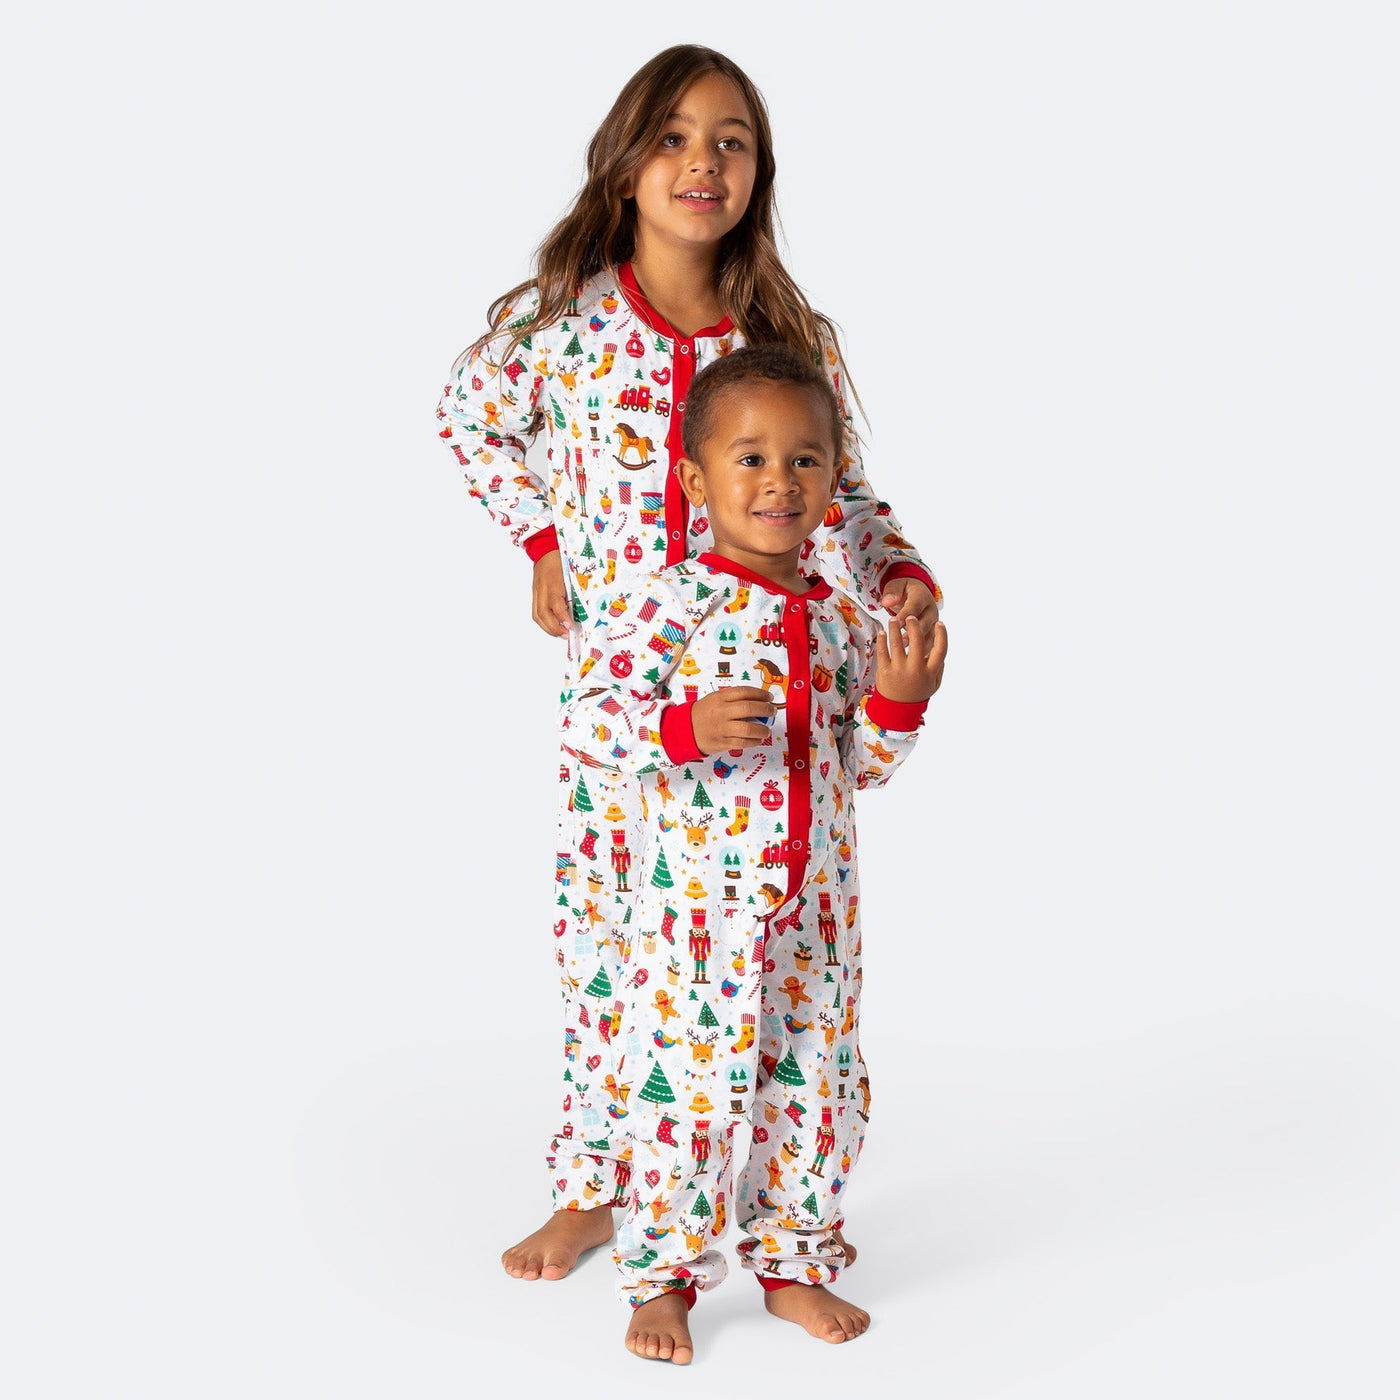 Weihnachtstraum weißer Overall-Pyjama Kinder